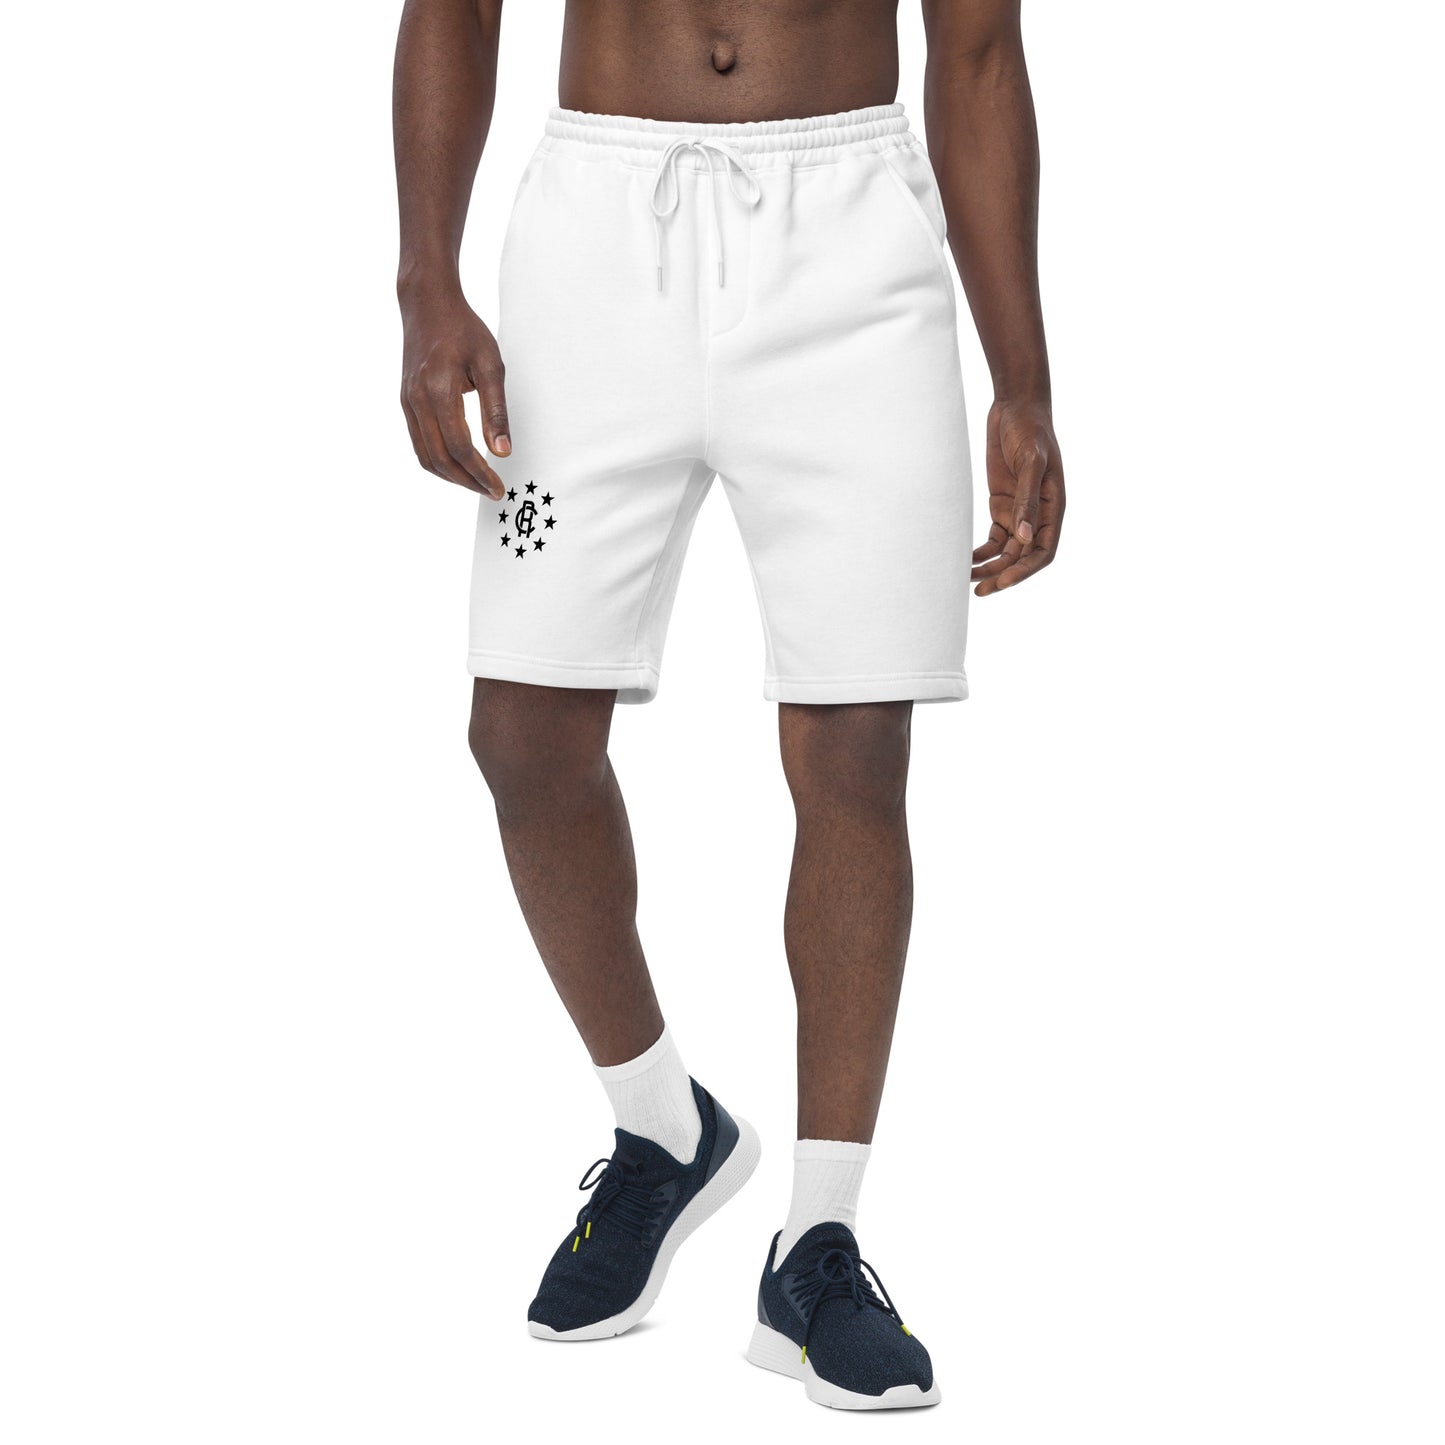 Romi Chase Star Logo Men's fleece shorts